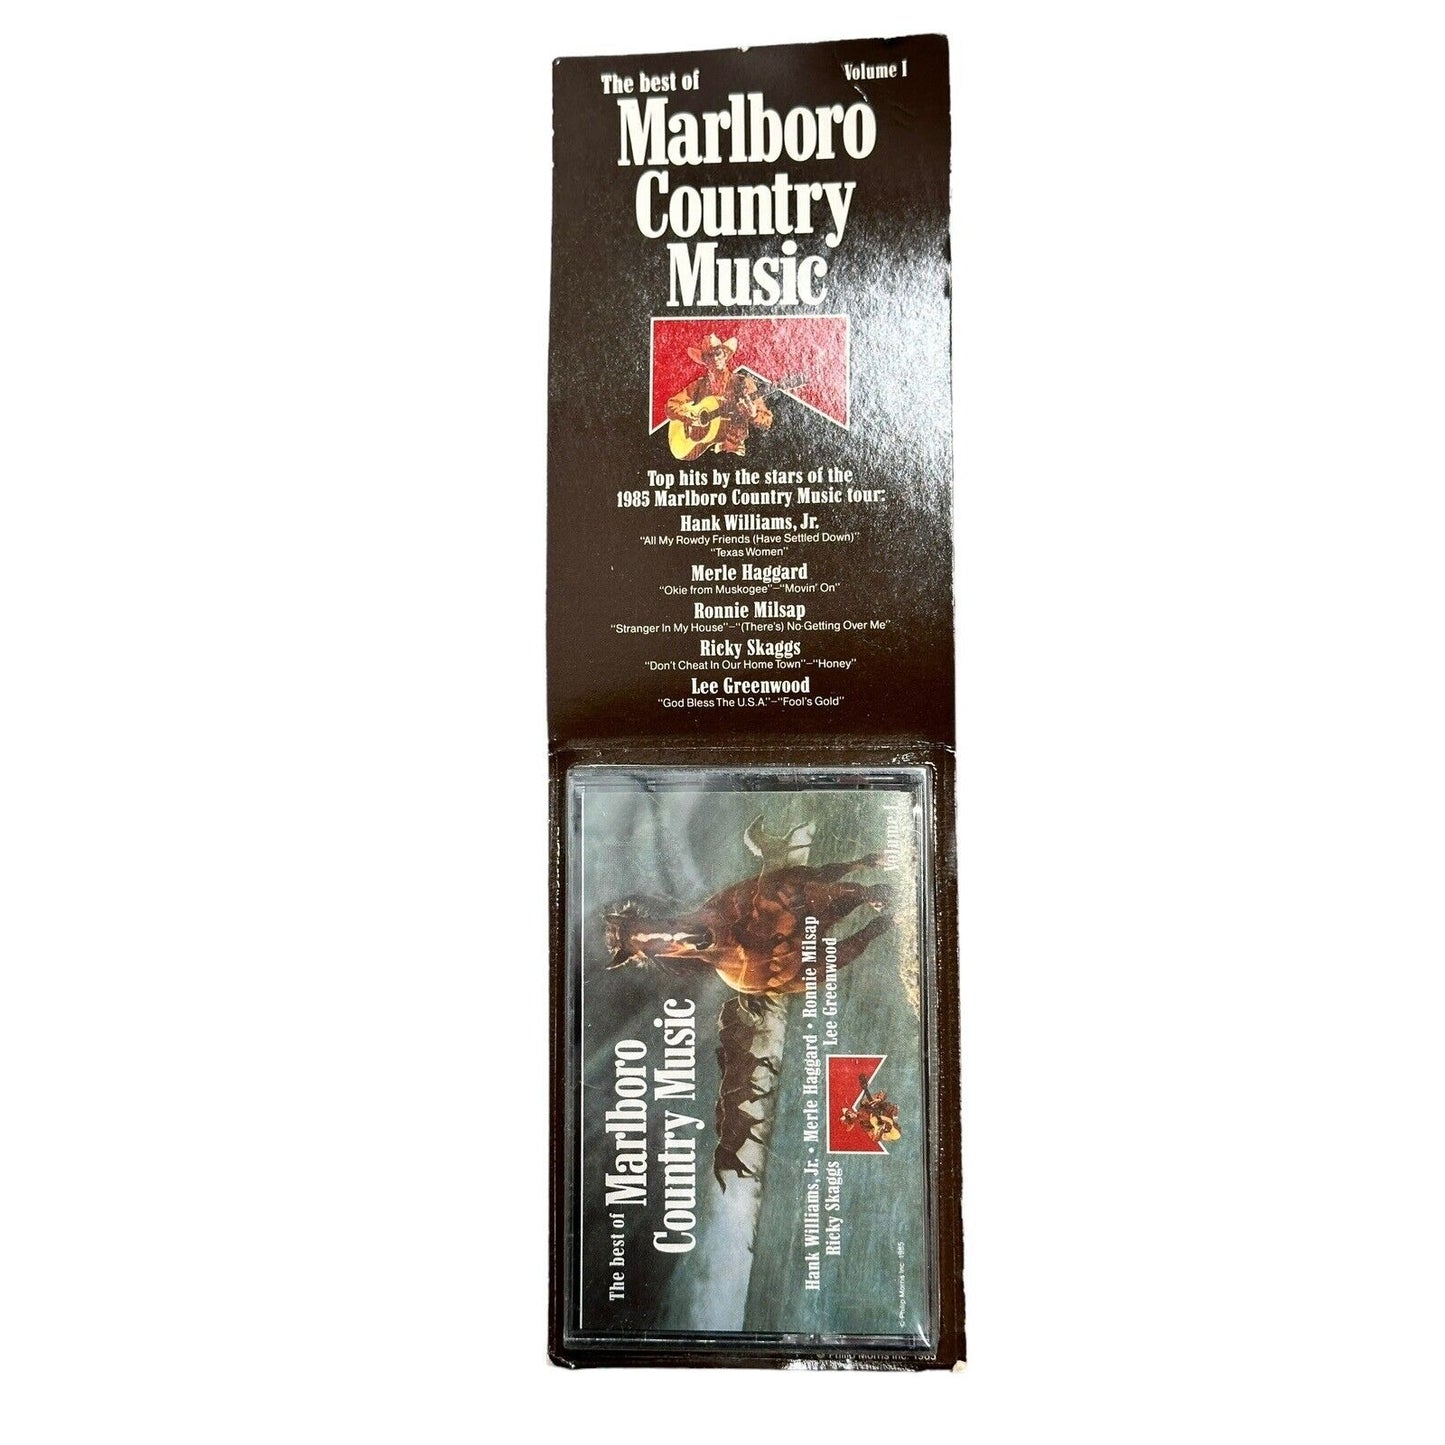 The Best of Marlboro Country Music Vol 1 cassette tape 1985 Hank Jr Merle Milsap